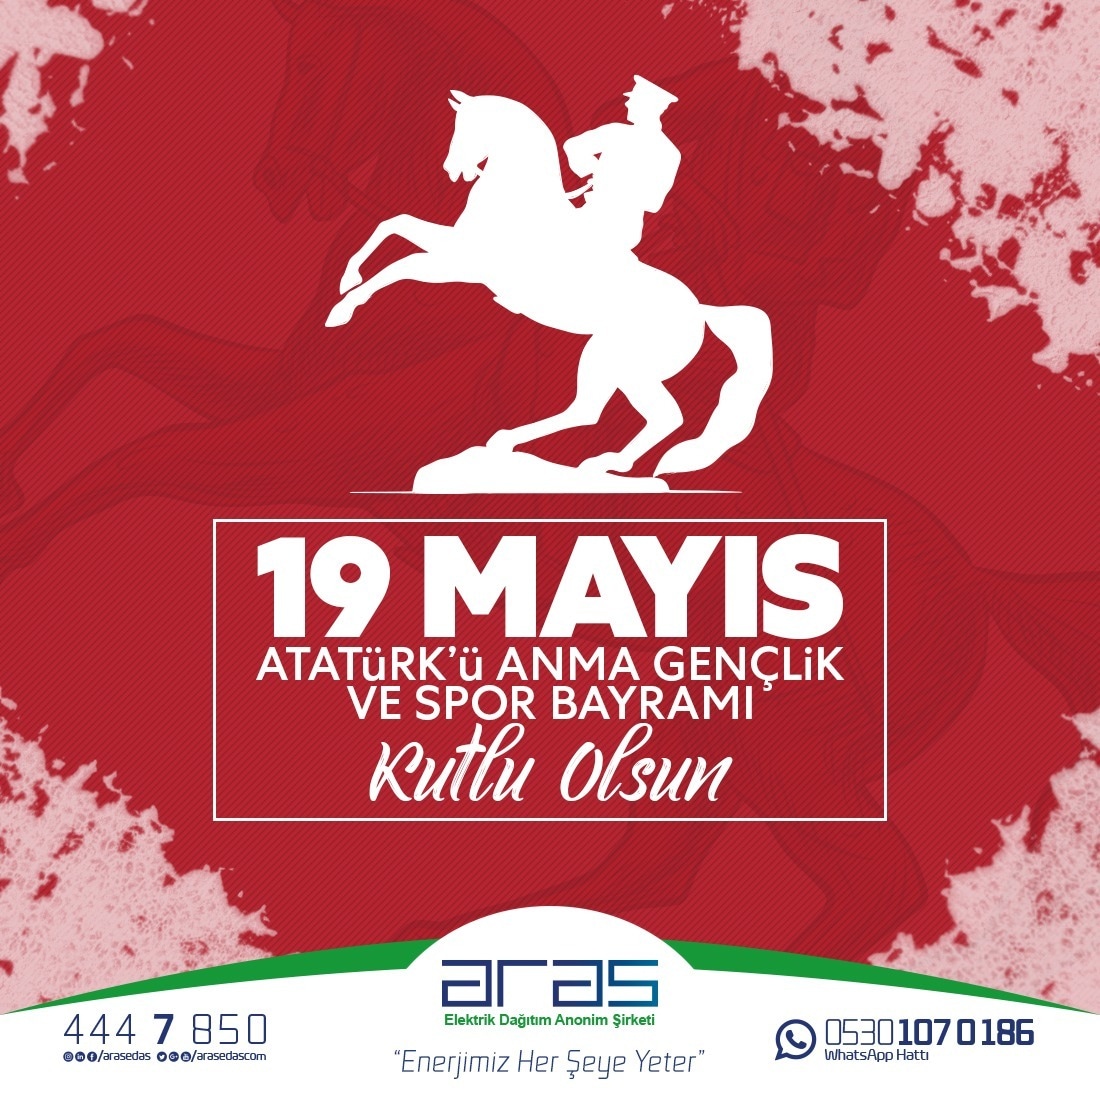 19 Mayıs Atatürk'ü Anma Gençlik ve Spor Bayramımız Kutlu Olsun.

#19MayısAtatürküAnmaGenclikveSporBayramı
#103Yıl